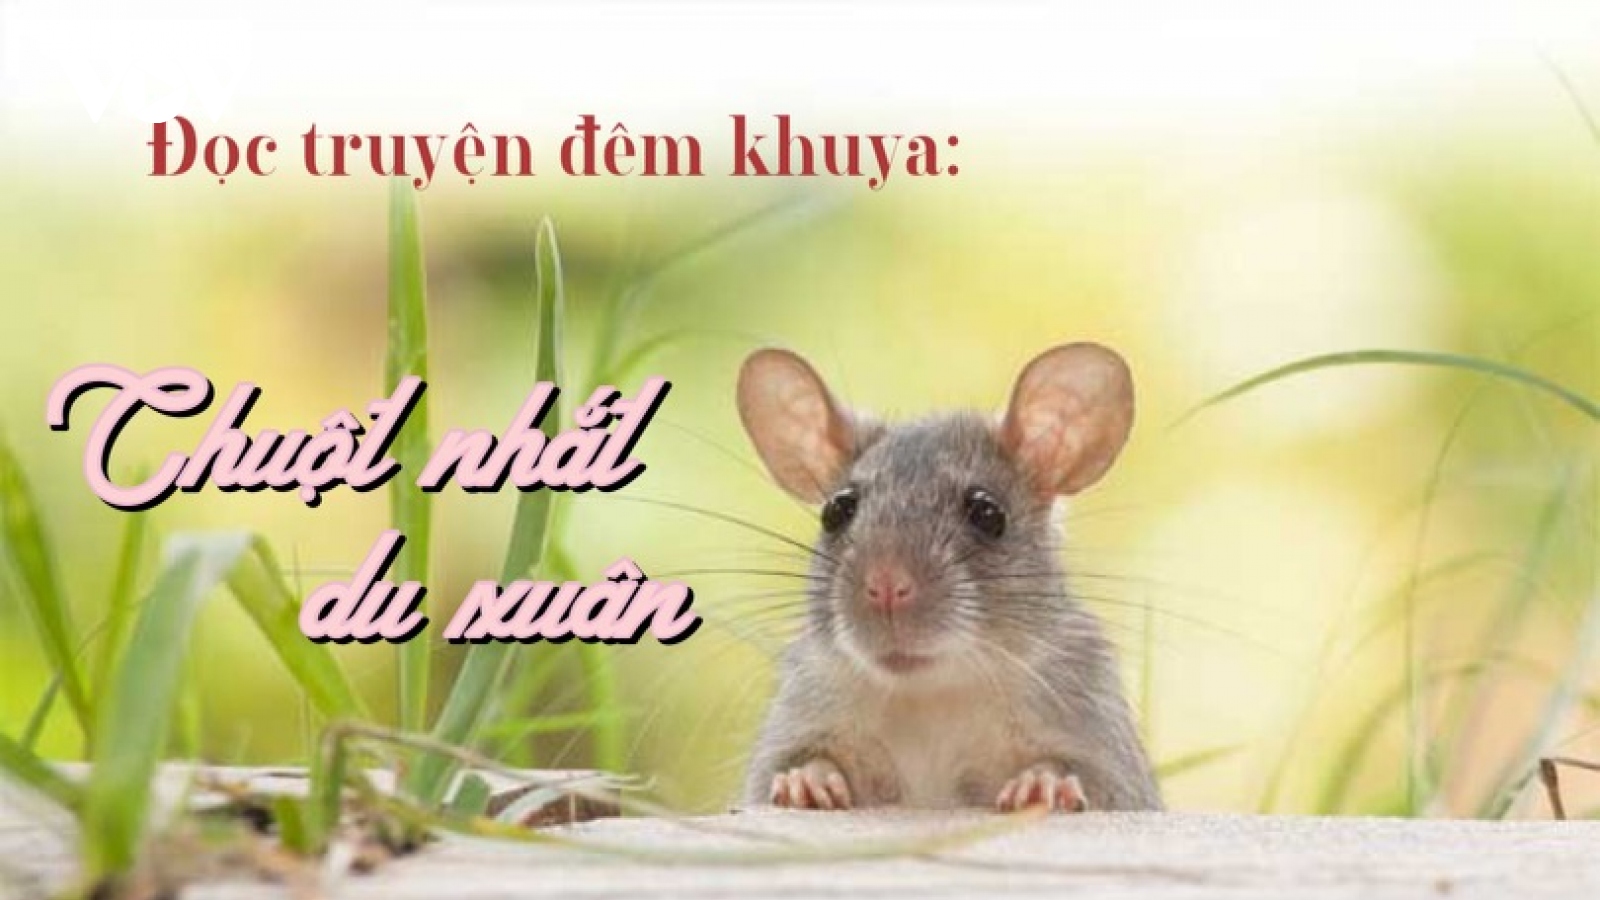 Truyện "Chuột nhắt mùa xuân"